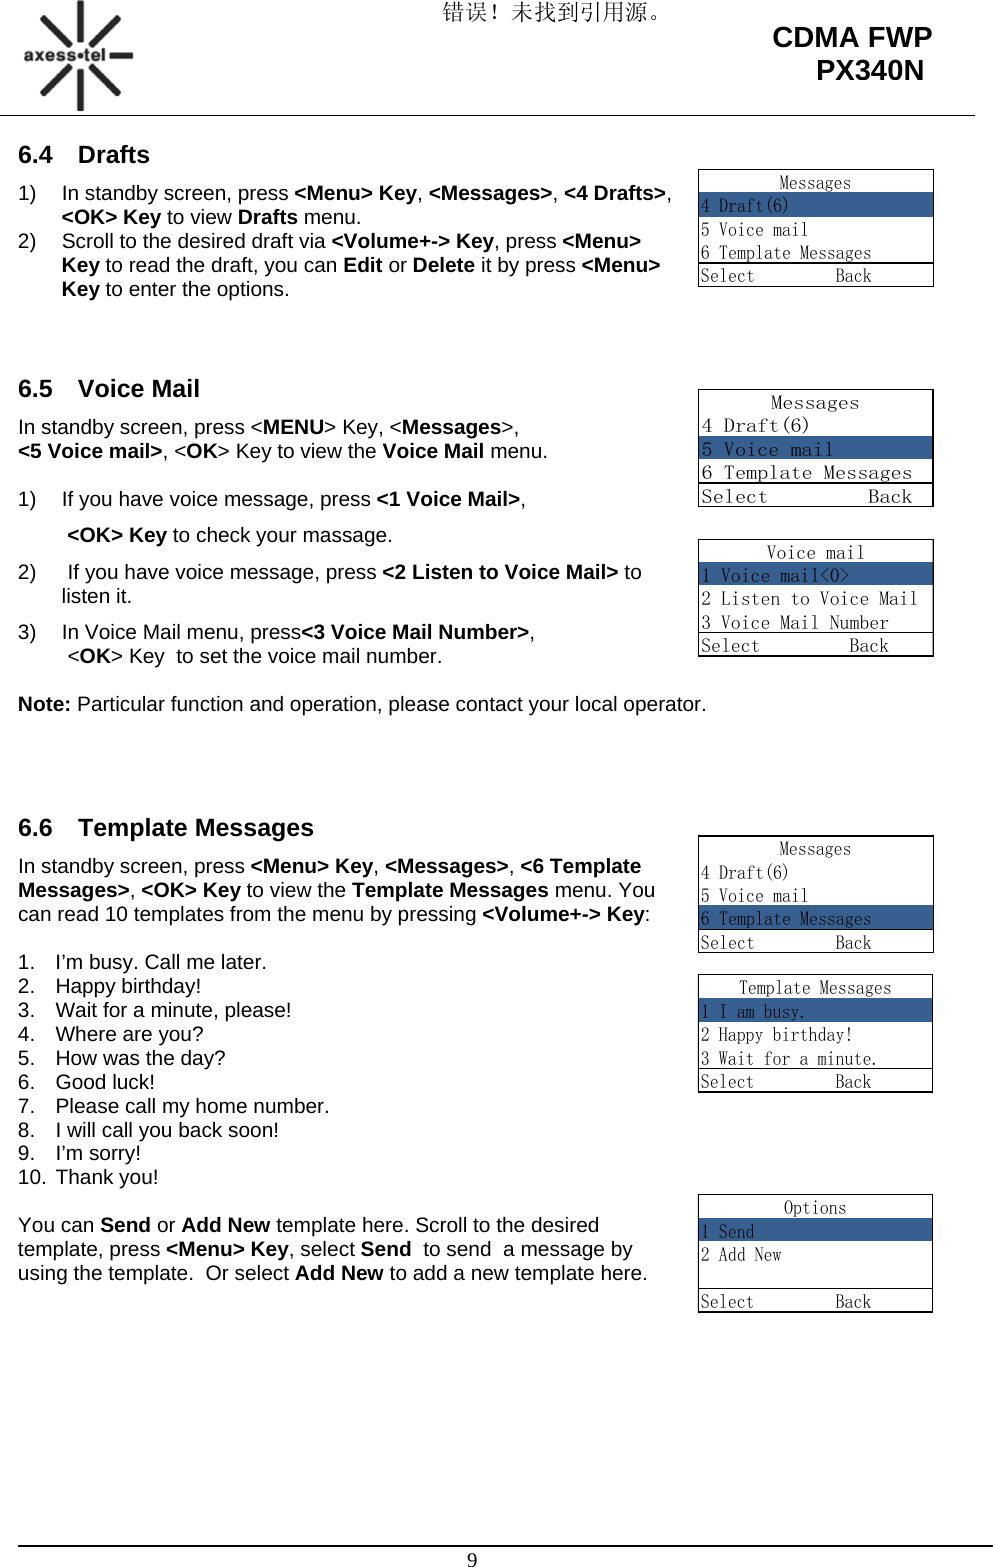 错误！未找到引用源。                                                                                                   9 CDMA FWP PX340NVoice mail1 Voice mail&lt;0&gt;2 Listen to Voice Mail3 Voice Mail NumberSelect         BackMessages4 Draft(6)5 Voice mail6 Template MessagesSelect         Back6.4 Drafts 1)  In standby screen, press &lt;Menu&gt; Key, &lt;Messages&gt;, &lt;4 Drafts&gt;, &lt;OK&gt; Key to view Drafts menu. 2)  Scroll to the desired draft via &lt;Volume+-&gt; Key, press &lt;Menu&gt; Key to read the draft, you can Edit or Delete it by press &lt;Menu&gt; Key to enter the options.   6.5 Voice Mail In standby screen, press &lt;MENU&gt; Key, &lt;Messages&gt;,  &lt;5 Voice mail&gt;, &lt;OK&gt; Key to view the Voice Mail menu.  1)  If you have voice message, press &lt;1 Voice Mail&gt;,   &lt;OK&gt; Key to check your massage. 2)   If you have voice message, press &lt;2 Listen to Voice Mail&gt; to listen it. 3)  In Voice Mail menu, press&lt;3 Voice Mail Number&gt;,  &lt;OK&gt; Key  to set the voice mail number.  Note: Particular function and operation, please contact your local operator.    6.6 Template Messages In standby screen, press &lt;Menu&gt; Key, &lt;Messages&gt;, &lt;6 Template Messages&gt;, &lt;OK&gt; Key to view the Template Messages menu. You can read 10 templates from the menu by pressing &lt;Volume+-&gt; Key:  1.  I’m busy. Call me later. 2. Happy birthday!  3.  Wait for a minute, please! 4.  Where are you? 5.  How was the day? 6. Good luck! 7.  Please call my home number. 8.  I will call you back soon! 9. I’m sorry! 10. Thank you!  You can Send or Add New template here. Scroll to the desired template, press &lt;Menu&gt; Key, select Send  to send  a message by using the template.  Or select Add New to add a new template here.         Messages4 Draft(6)5 Voice mail6 Template MessagesSelect         BackMessages4 Draft(6)5 Voice mail6 Template MessagesSelect         BackTemplate Messages1 I am busy.2 Happy birthday!3 Wait for a minute.Select         BackOptions1 Send2 Add NewSelect         Back